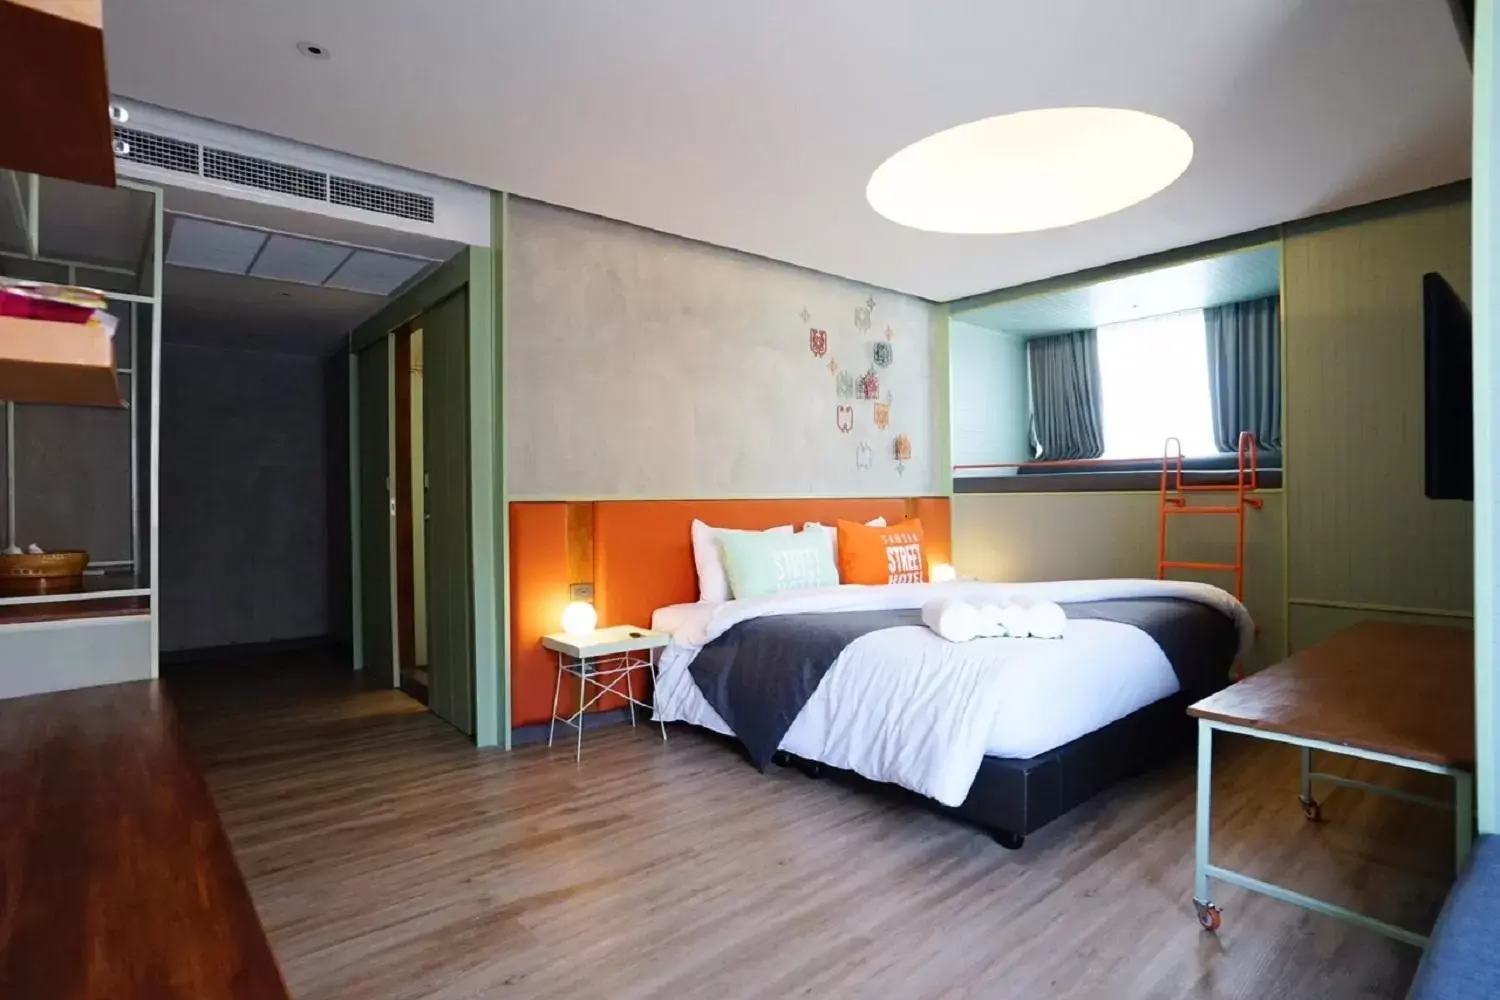 Bed in Samsen Street Hotel - SHA Extra Plus